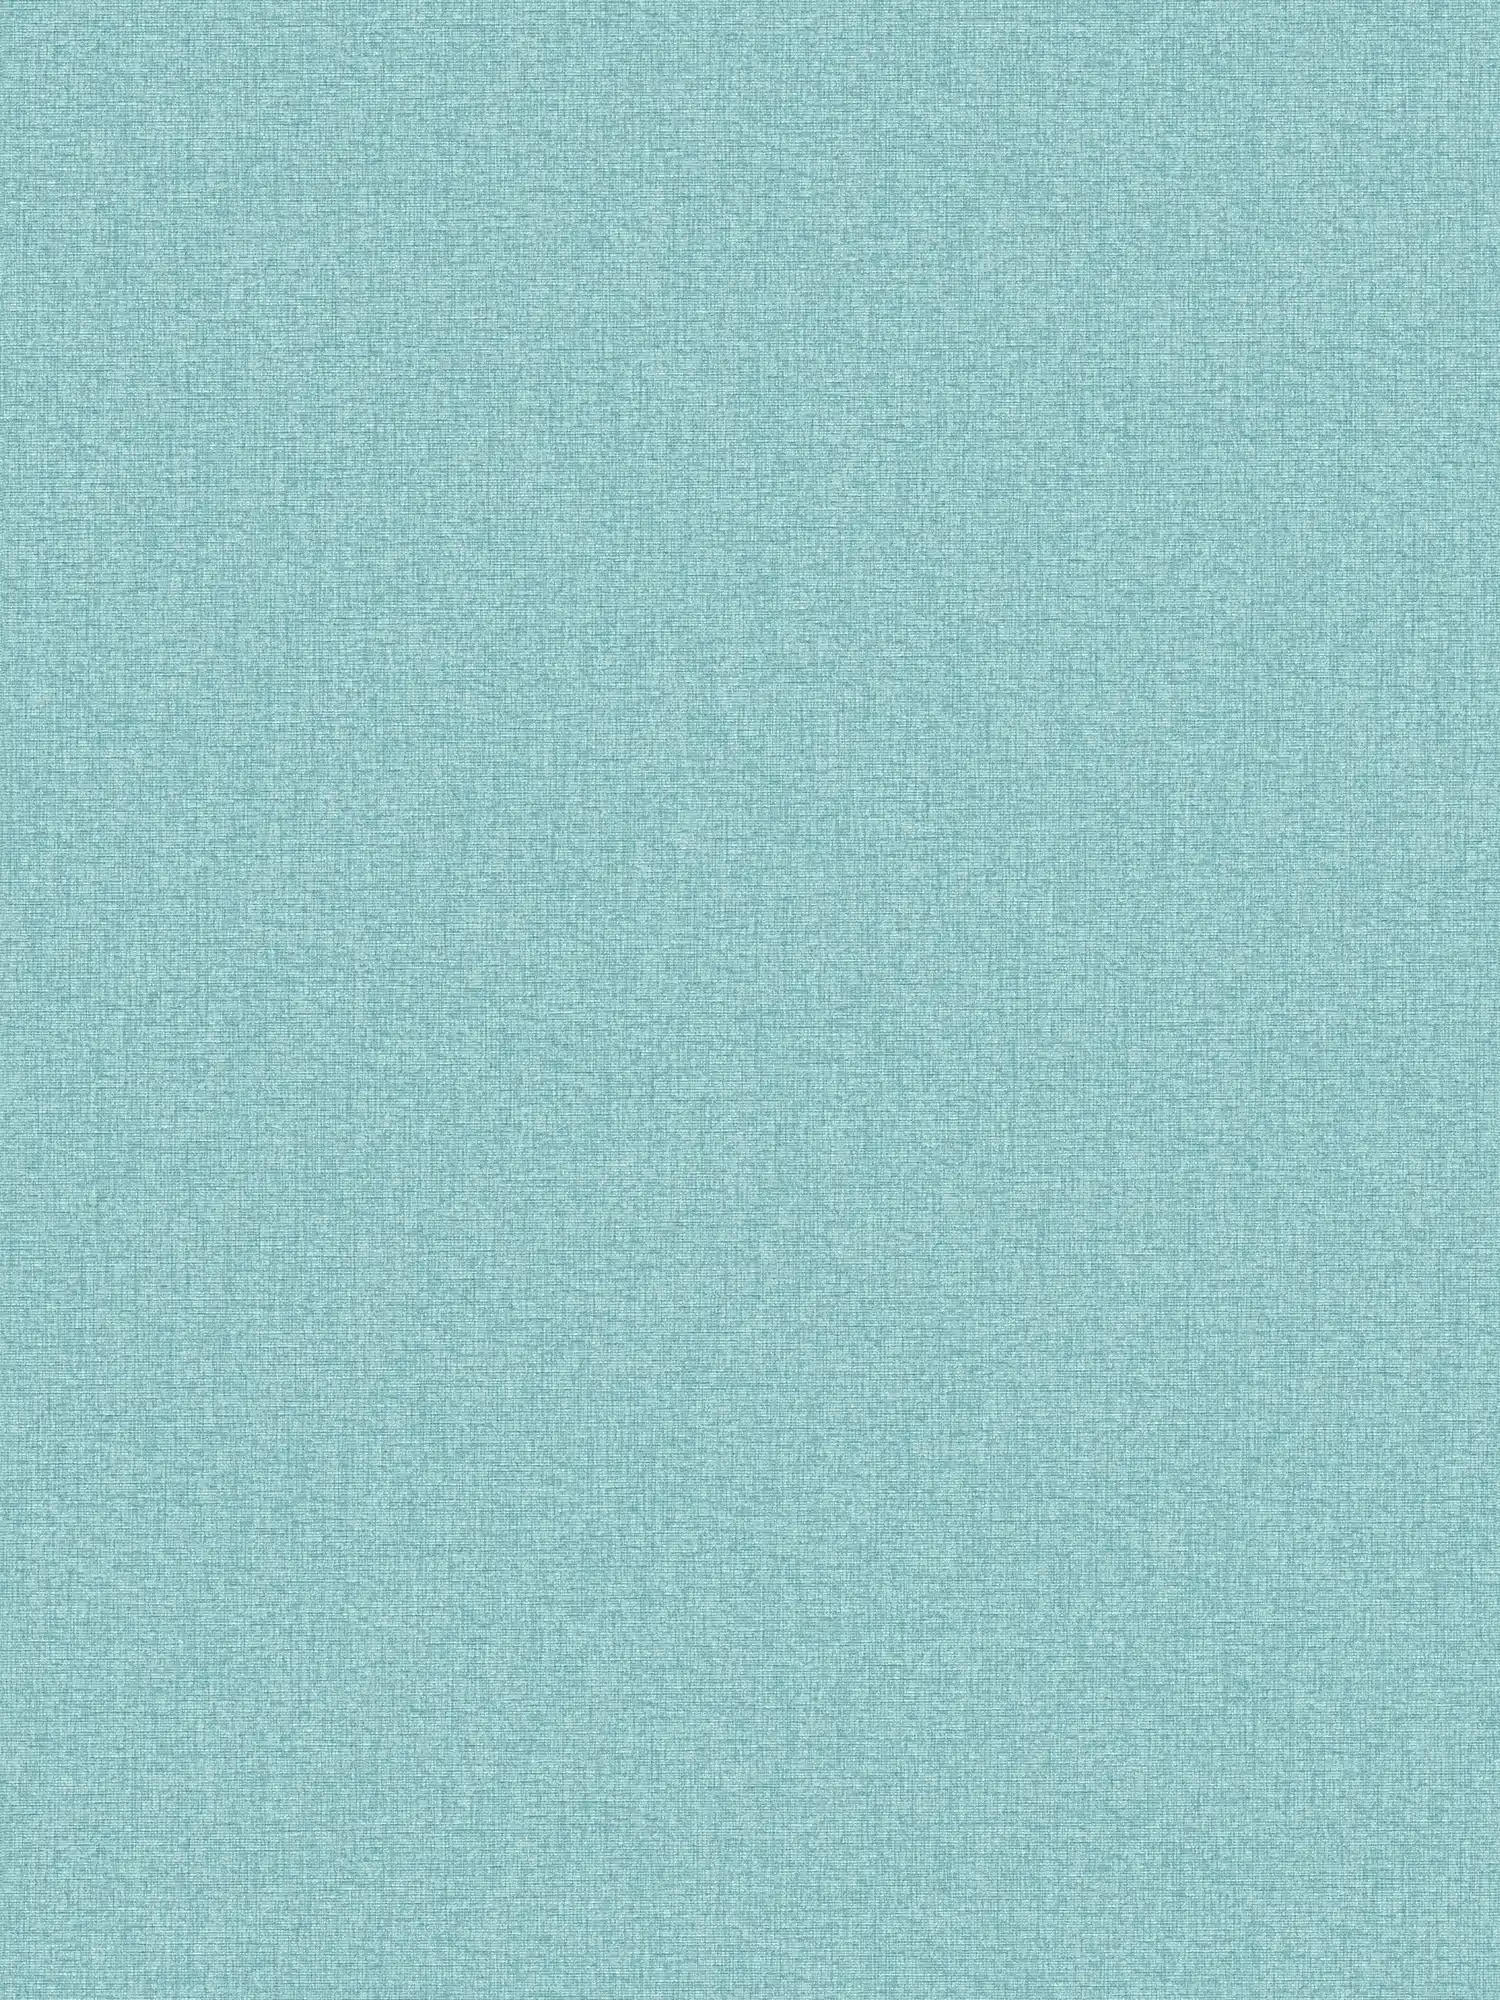 Papel pintado tejido-no tejido liso con aspecto de tela y estructura ligera, mate - turquesa, azul, azul claro
